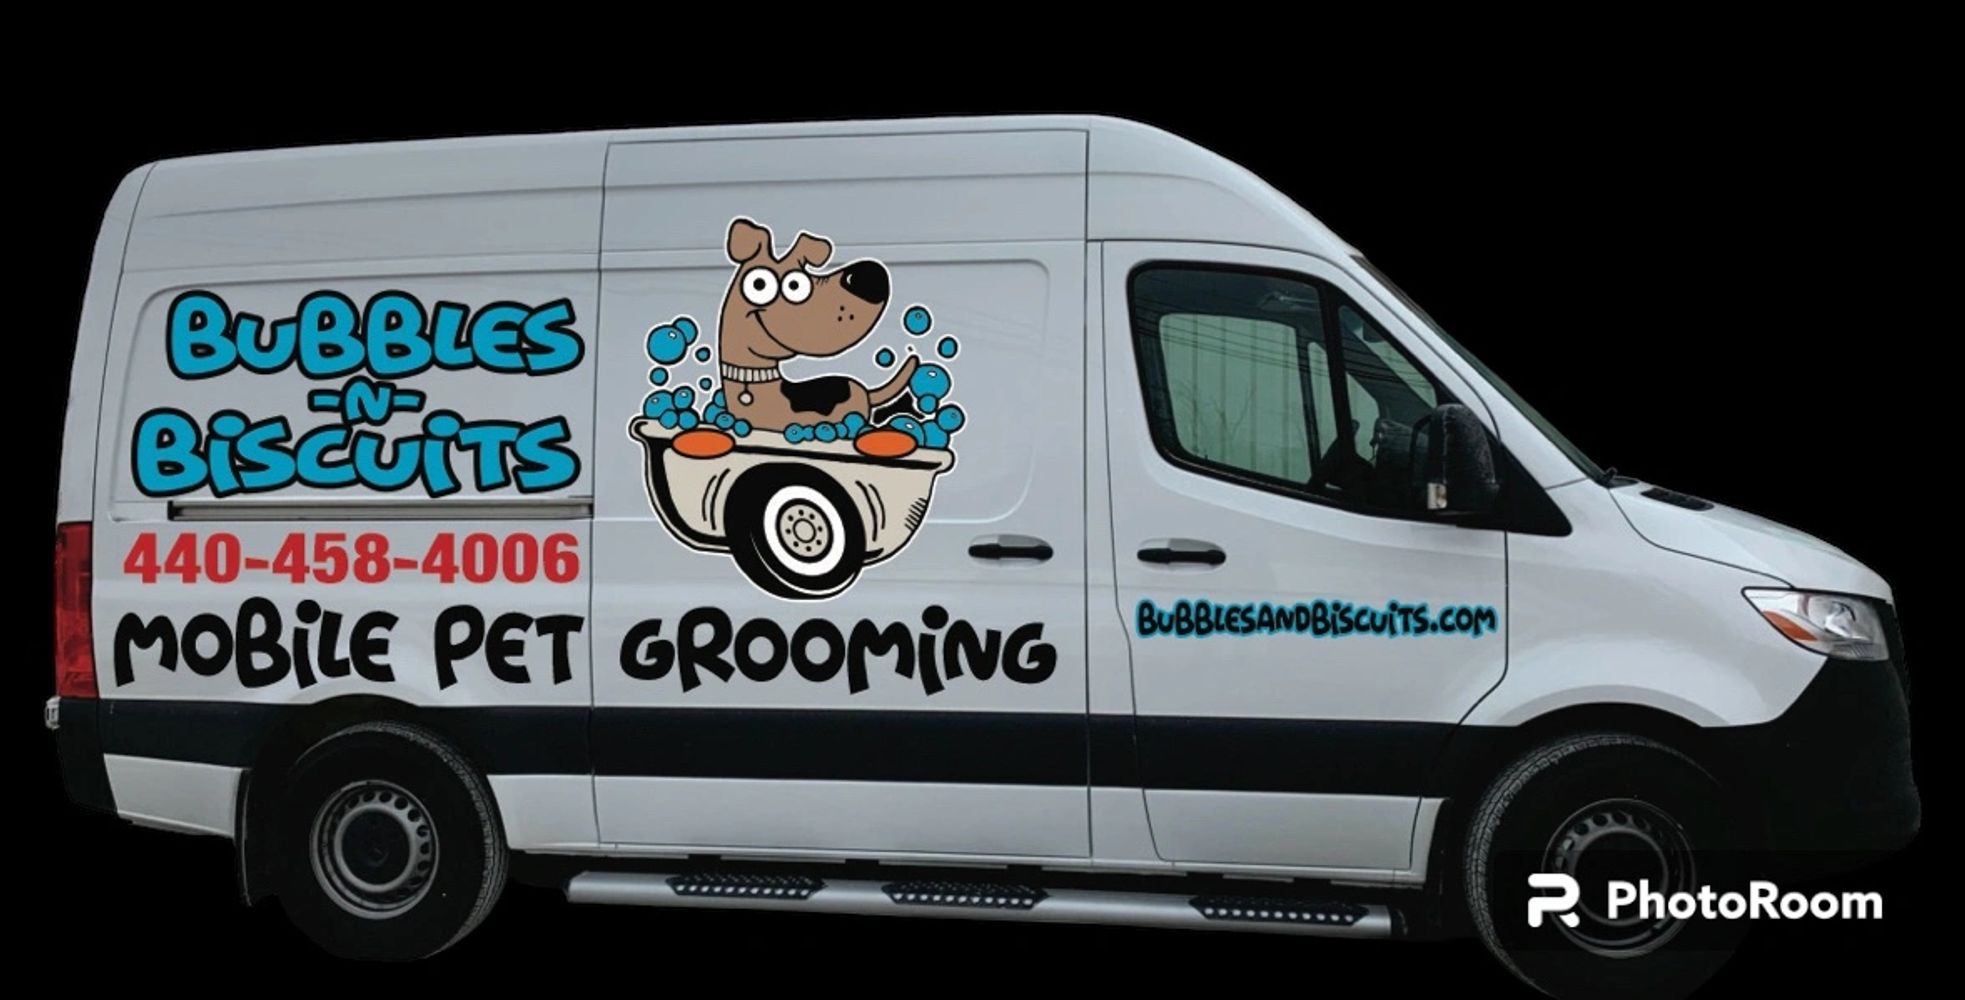 Bubbles-N-Biscuits Mobile Pet Grooming brings the groom to you!   Our newest van of our 6 van fleet!